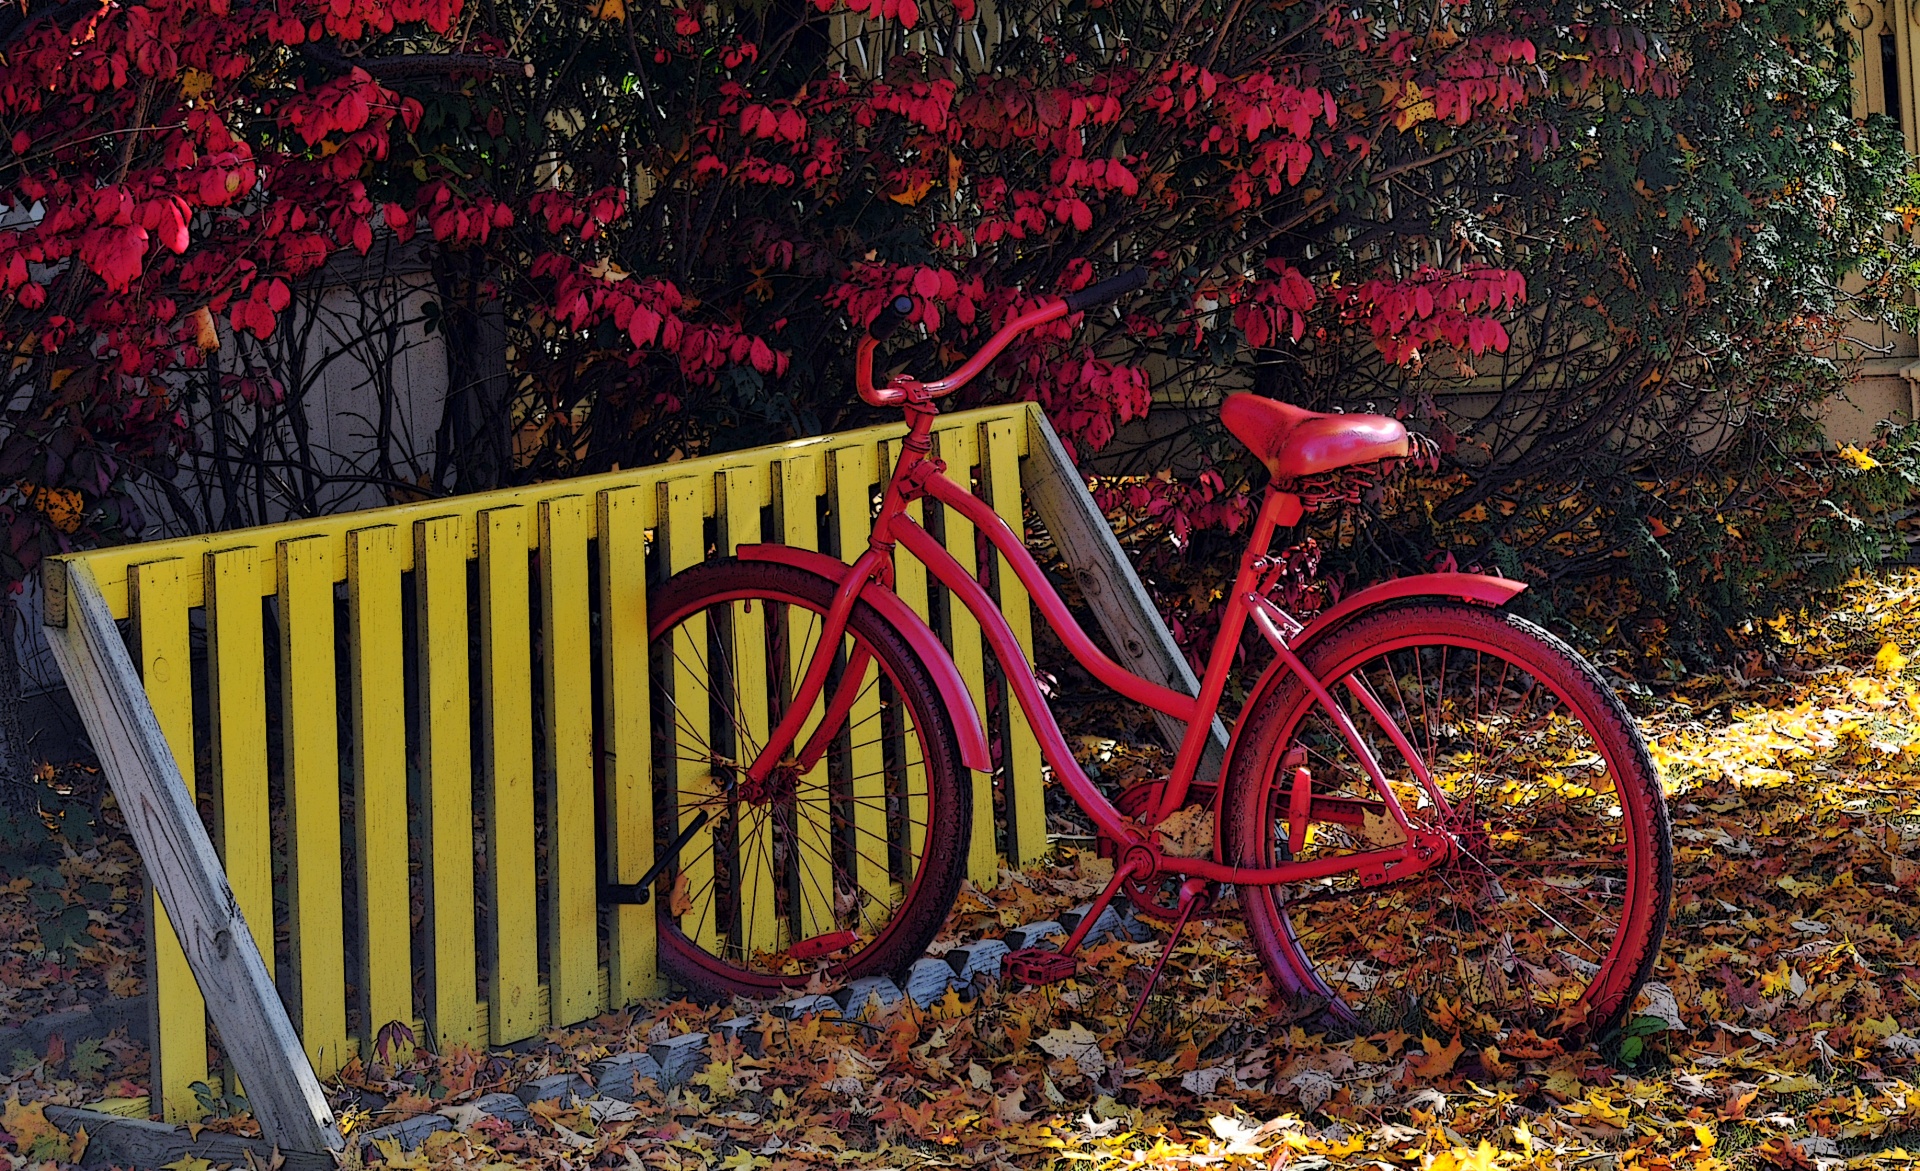 Красный велосипед фото